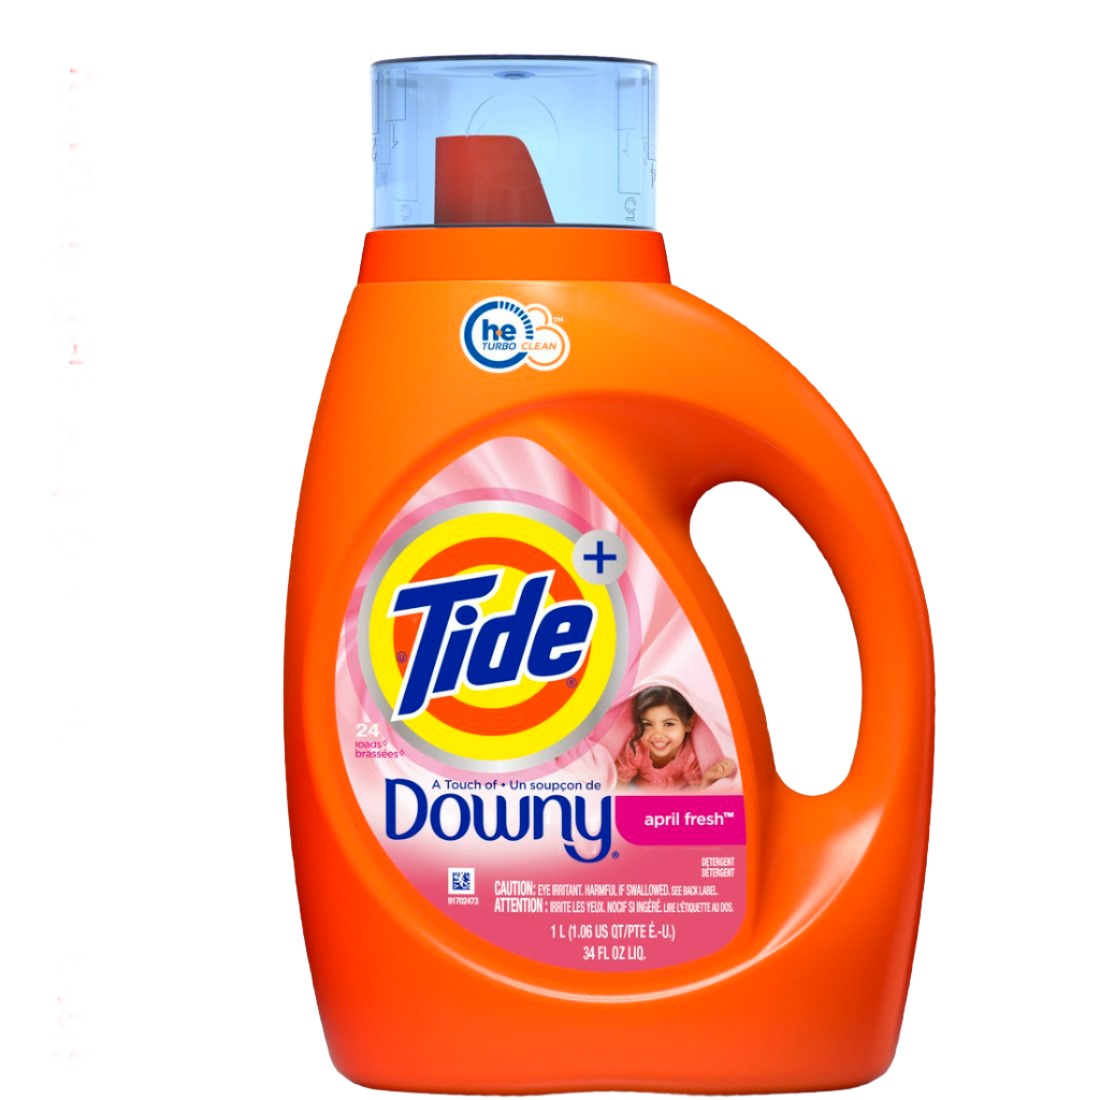 Tide Plus Downy April Fresh HE Compatible Liquid Laundry Detergent Soap, 34oz - Case of 6